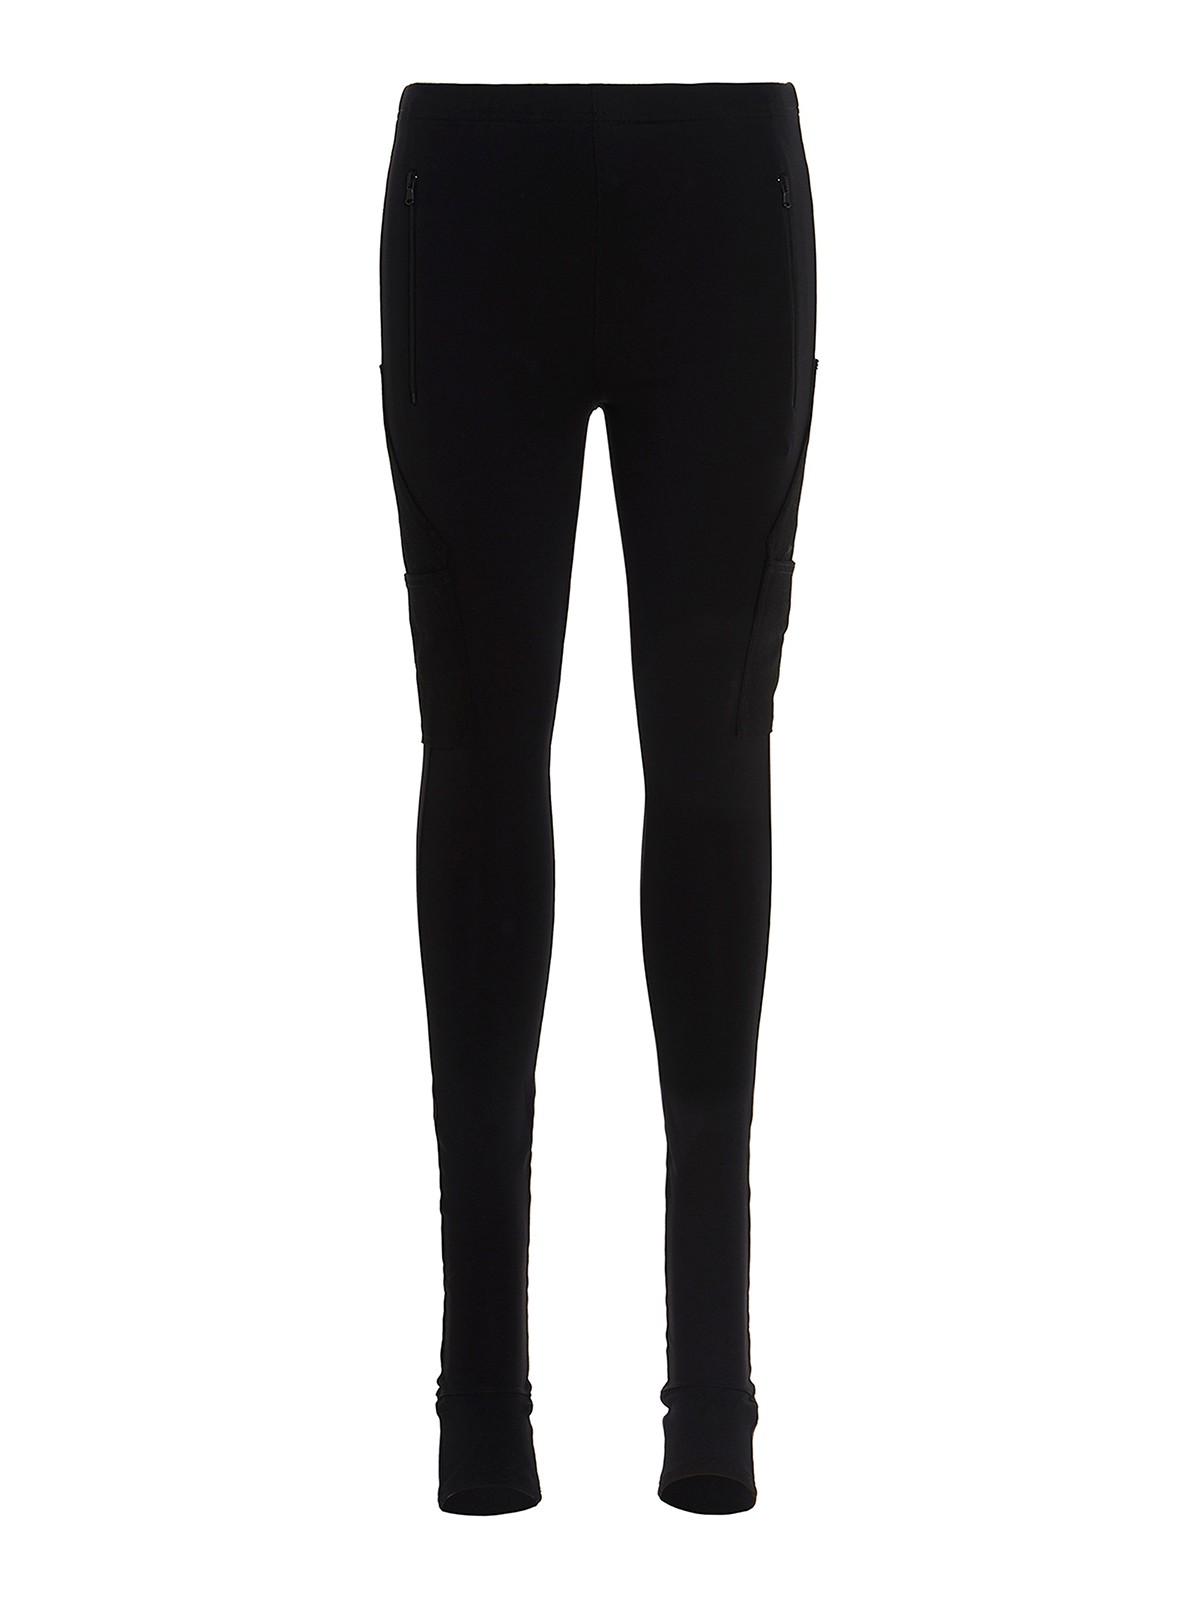 High-rise velvet leggings in black - Wardrobe NYC